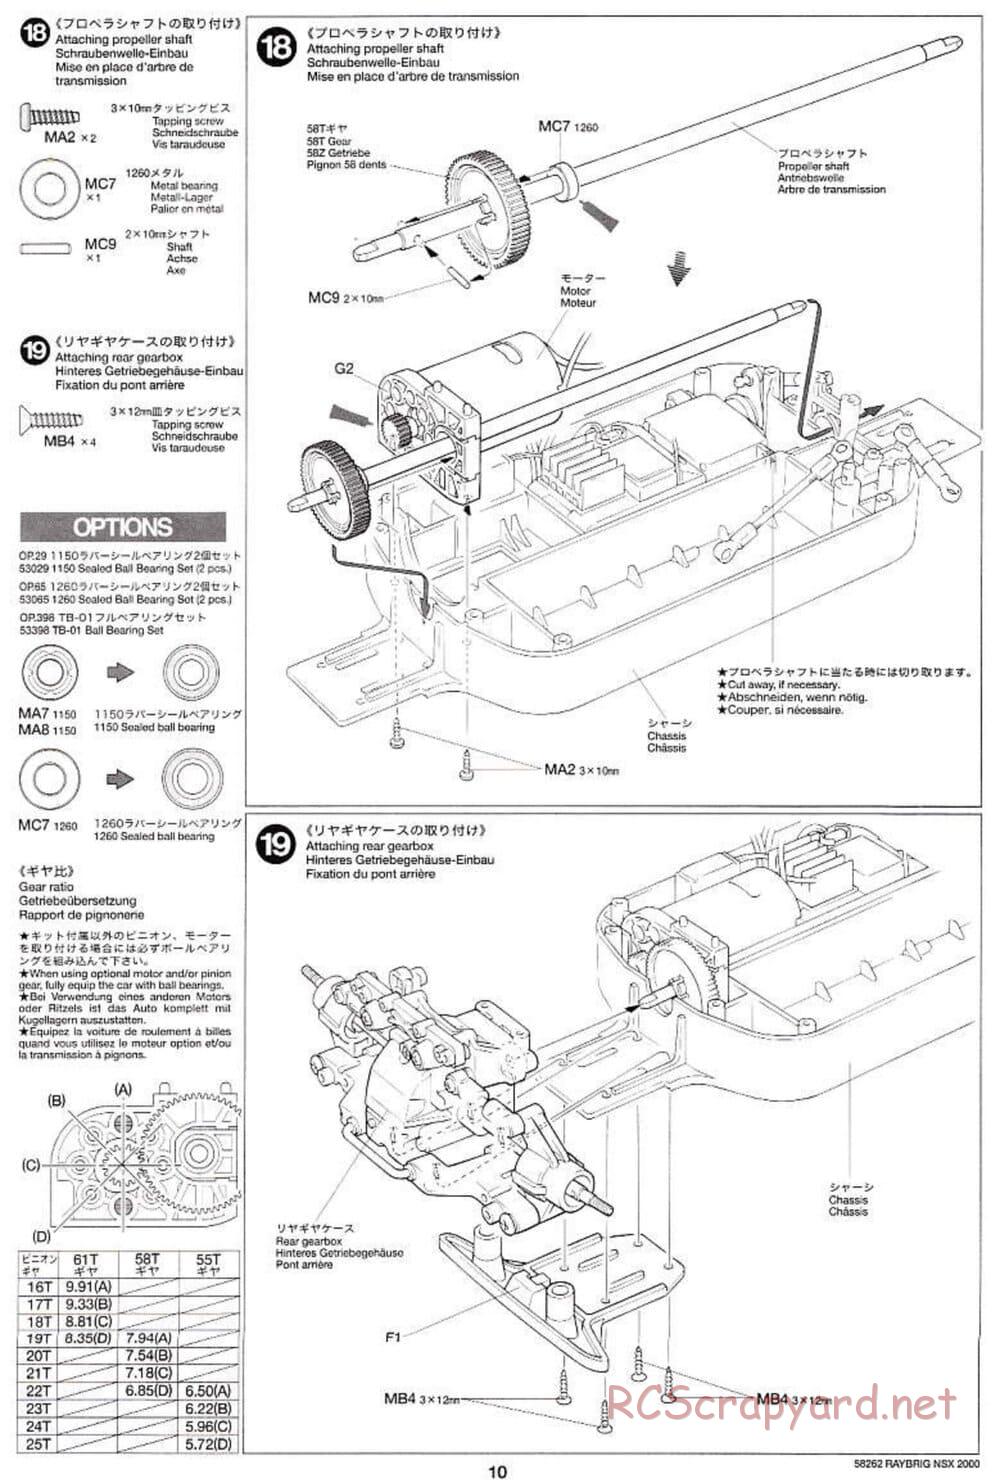 Tamiya - Raybrig NSX 2000 - TB-01 Chassis - Manual - Page 10